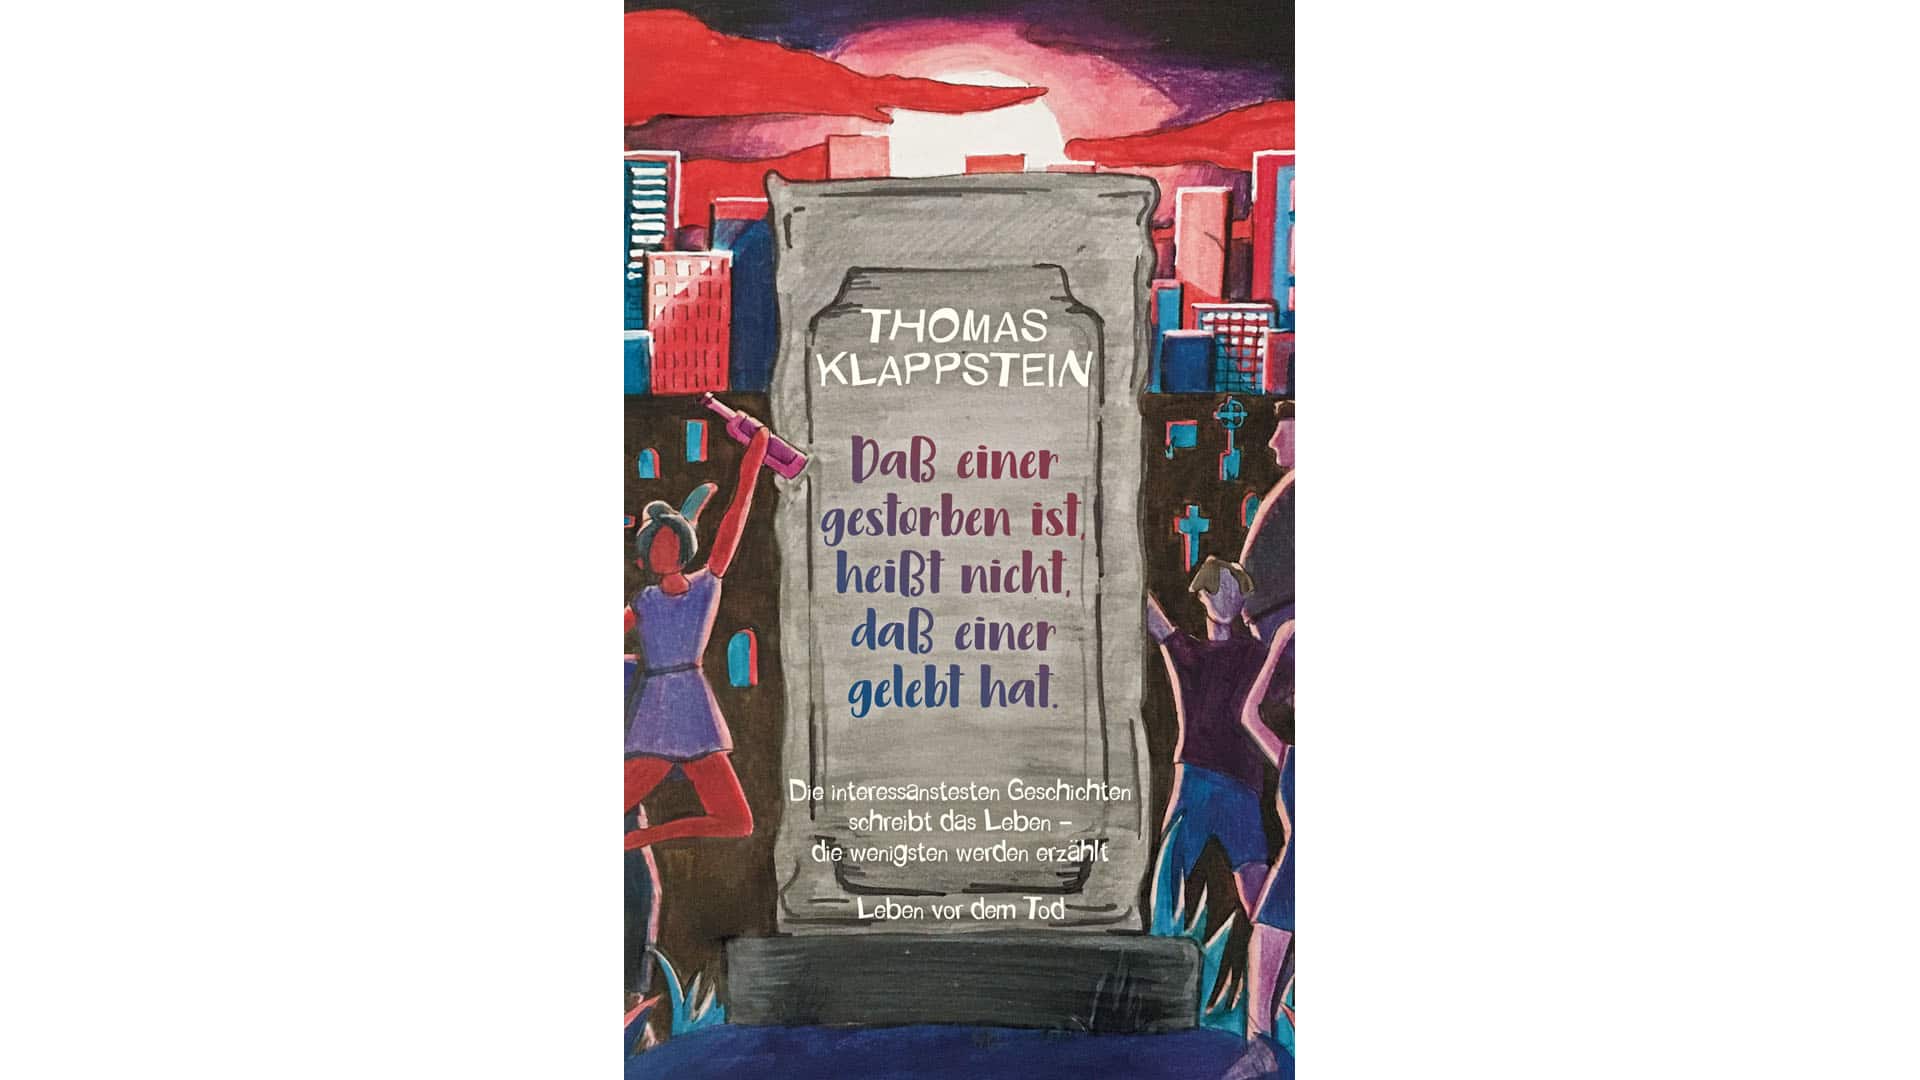 In seinem neuen Buch präsentiert Klappstein verschiedene Lebensgeschichten, die ihm während seiner Arbeit als Trauerredner begegnet sind: „Dass einer gestorben ist, heißt nicht, daß einer gelebt hat“, Books on Demand, 200 Seiten, 9,99 Euro, ISBN 9783751973519